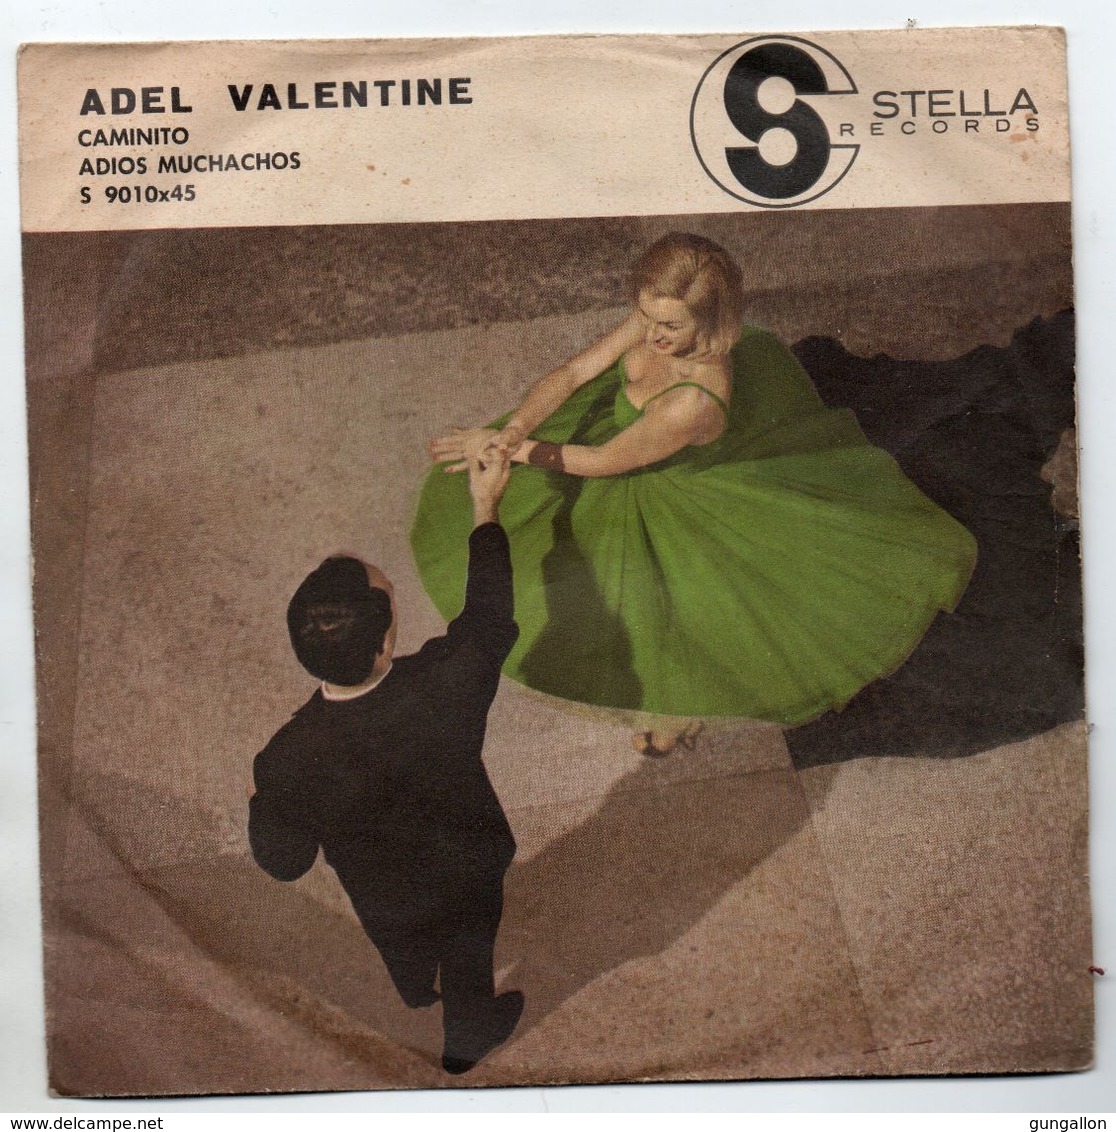 Adel Valentine (1960)  "Caminito  -  Adios Muchachos" - Instrumental